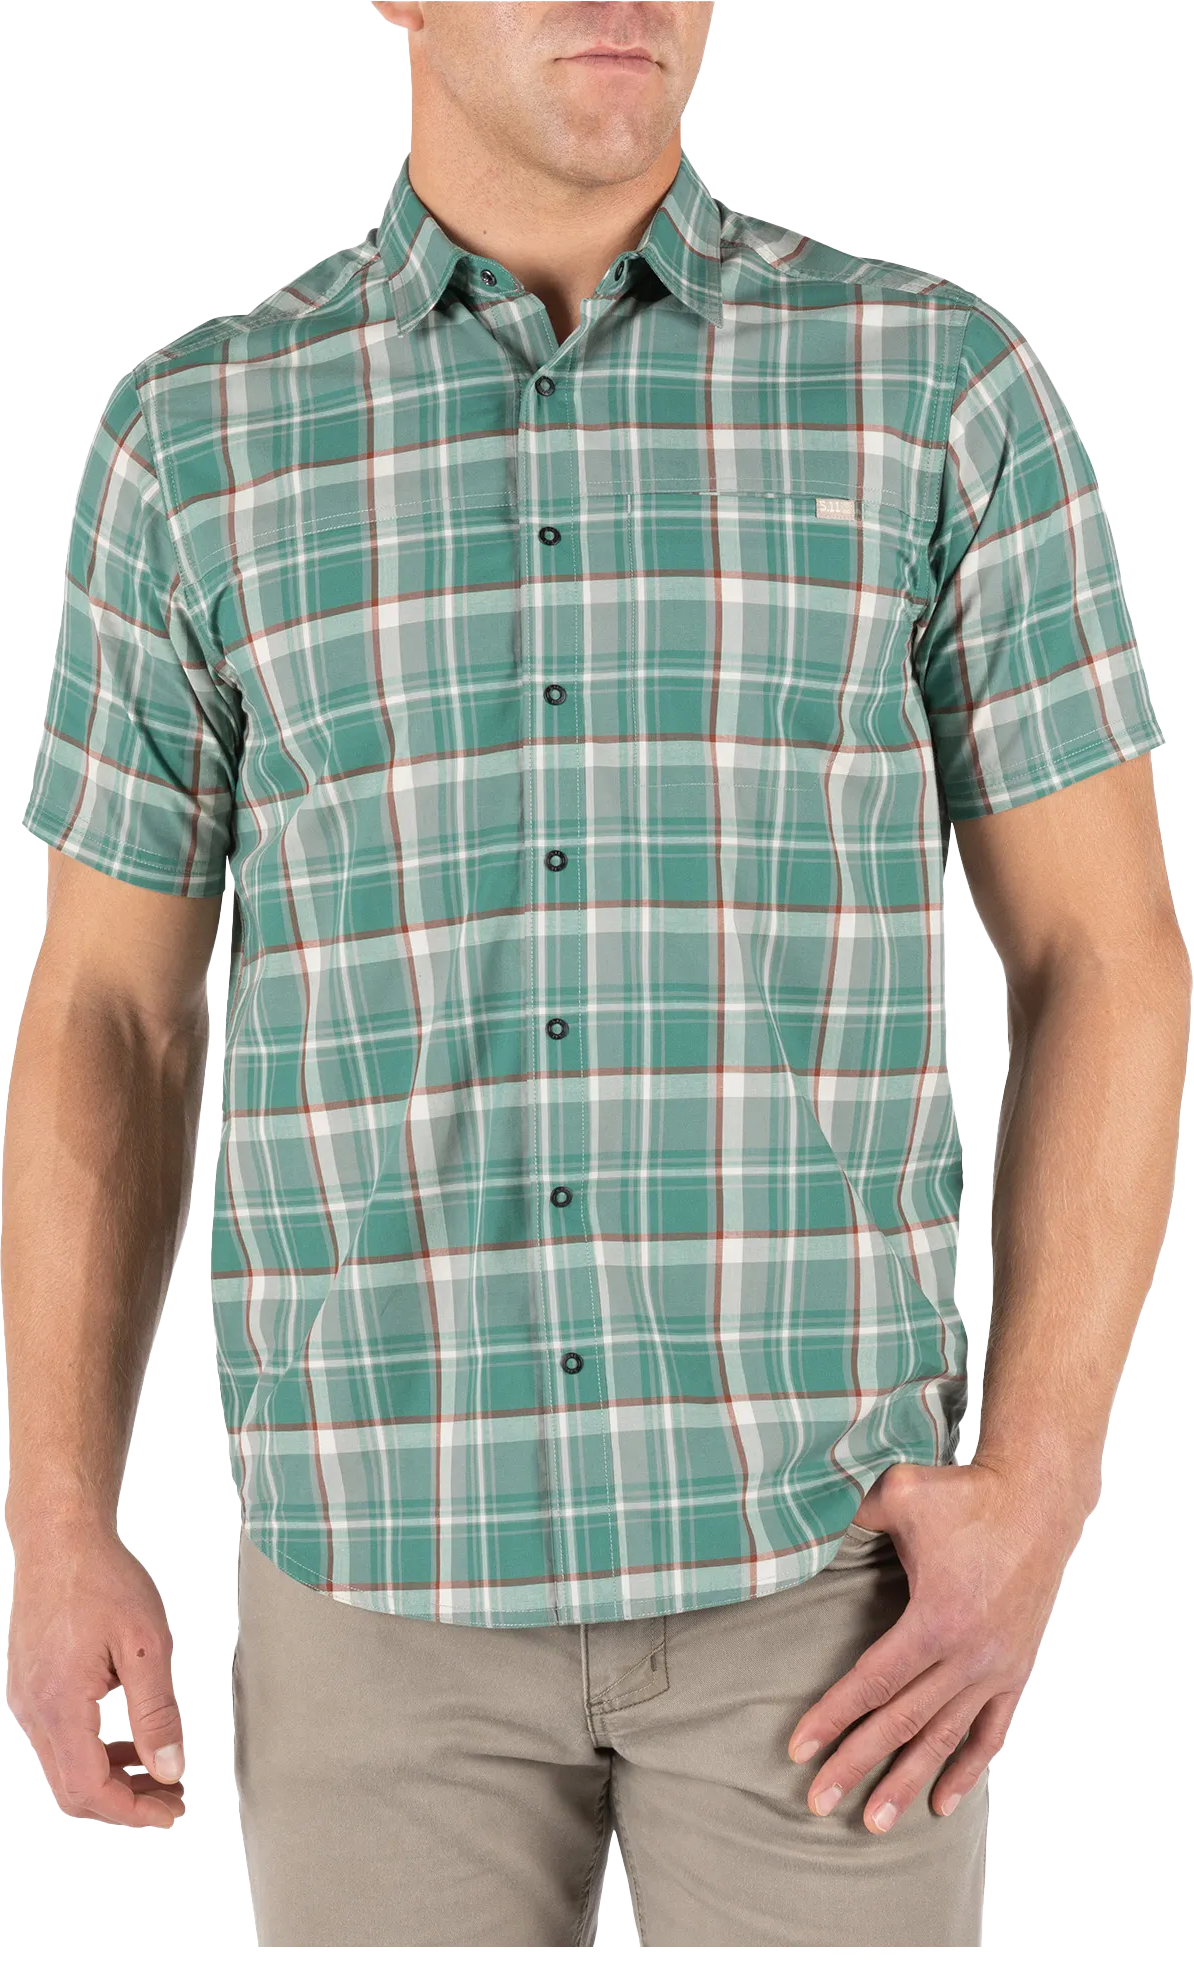 BREACH & CLEAR - 5.11 Hunter Plaid Short Sleeve Shirt